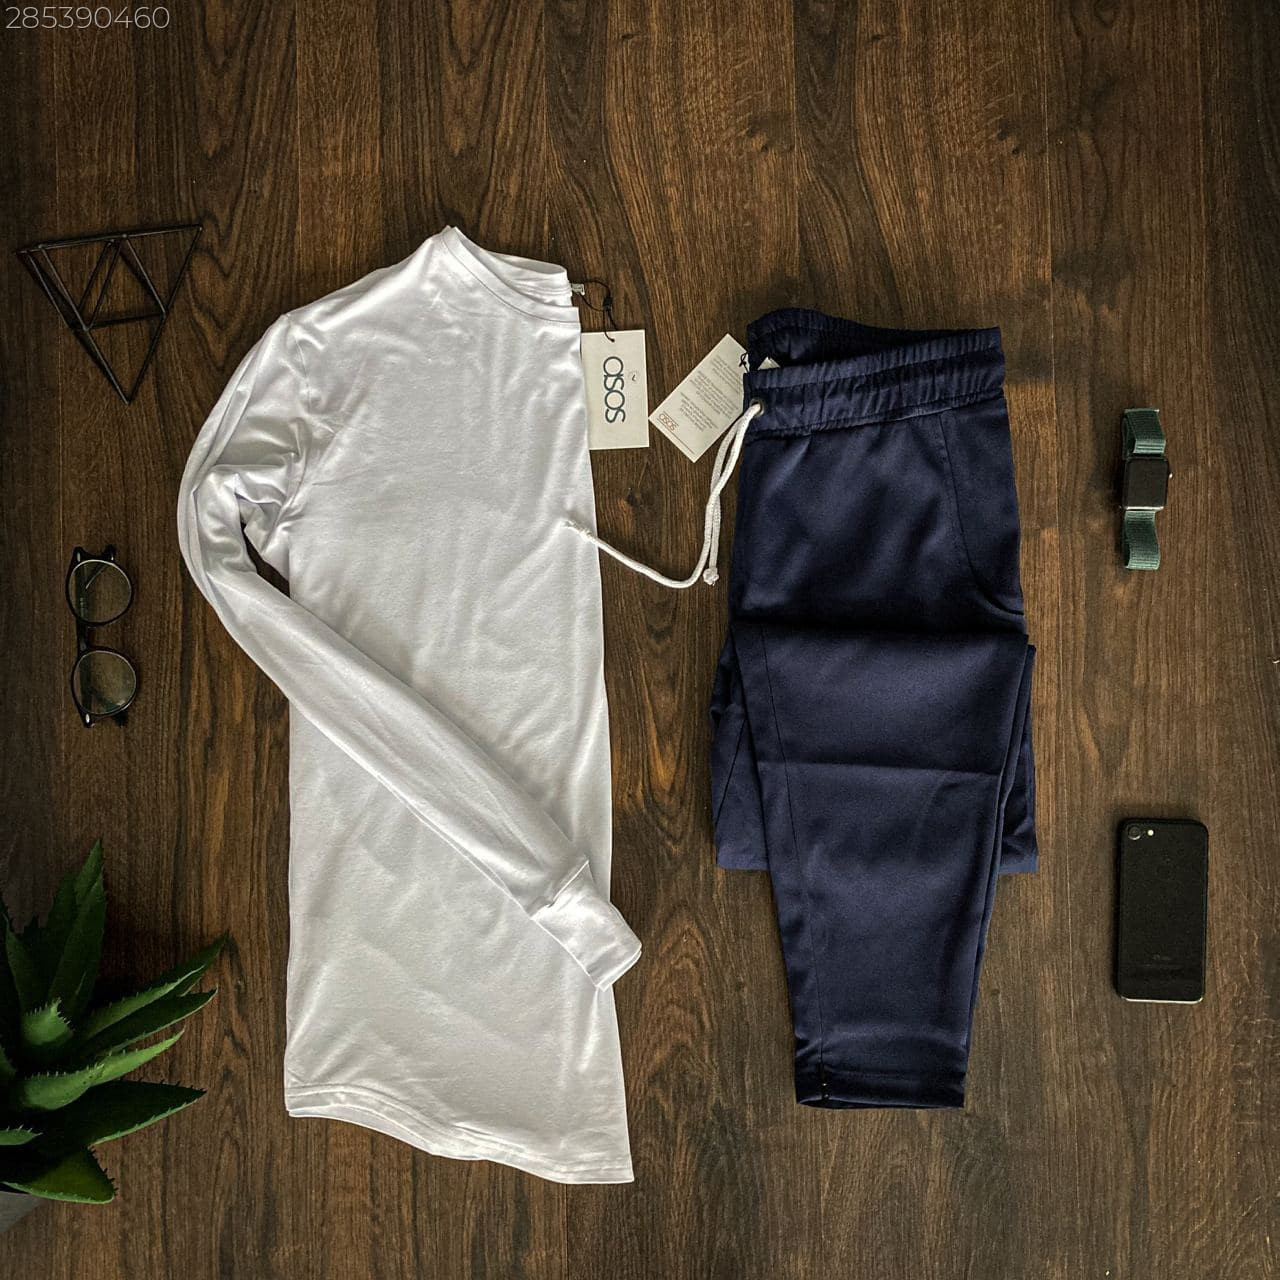 Стильний чоловічий комплект білий лонгслів сині штани Розміри: S, M, L, XL